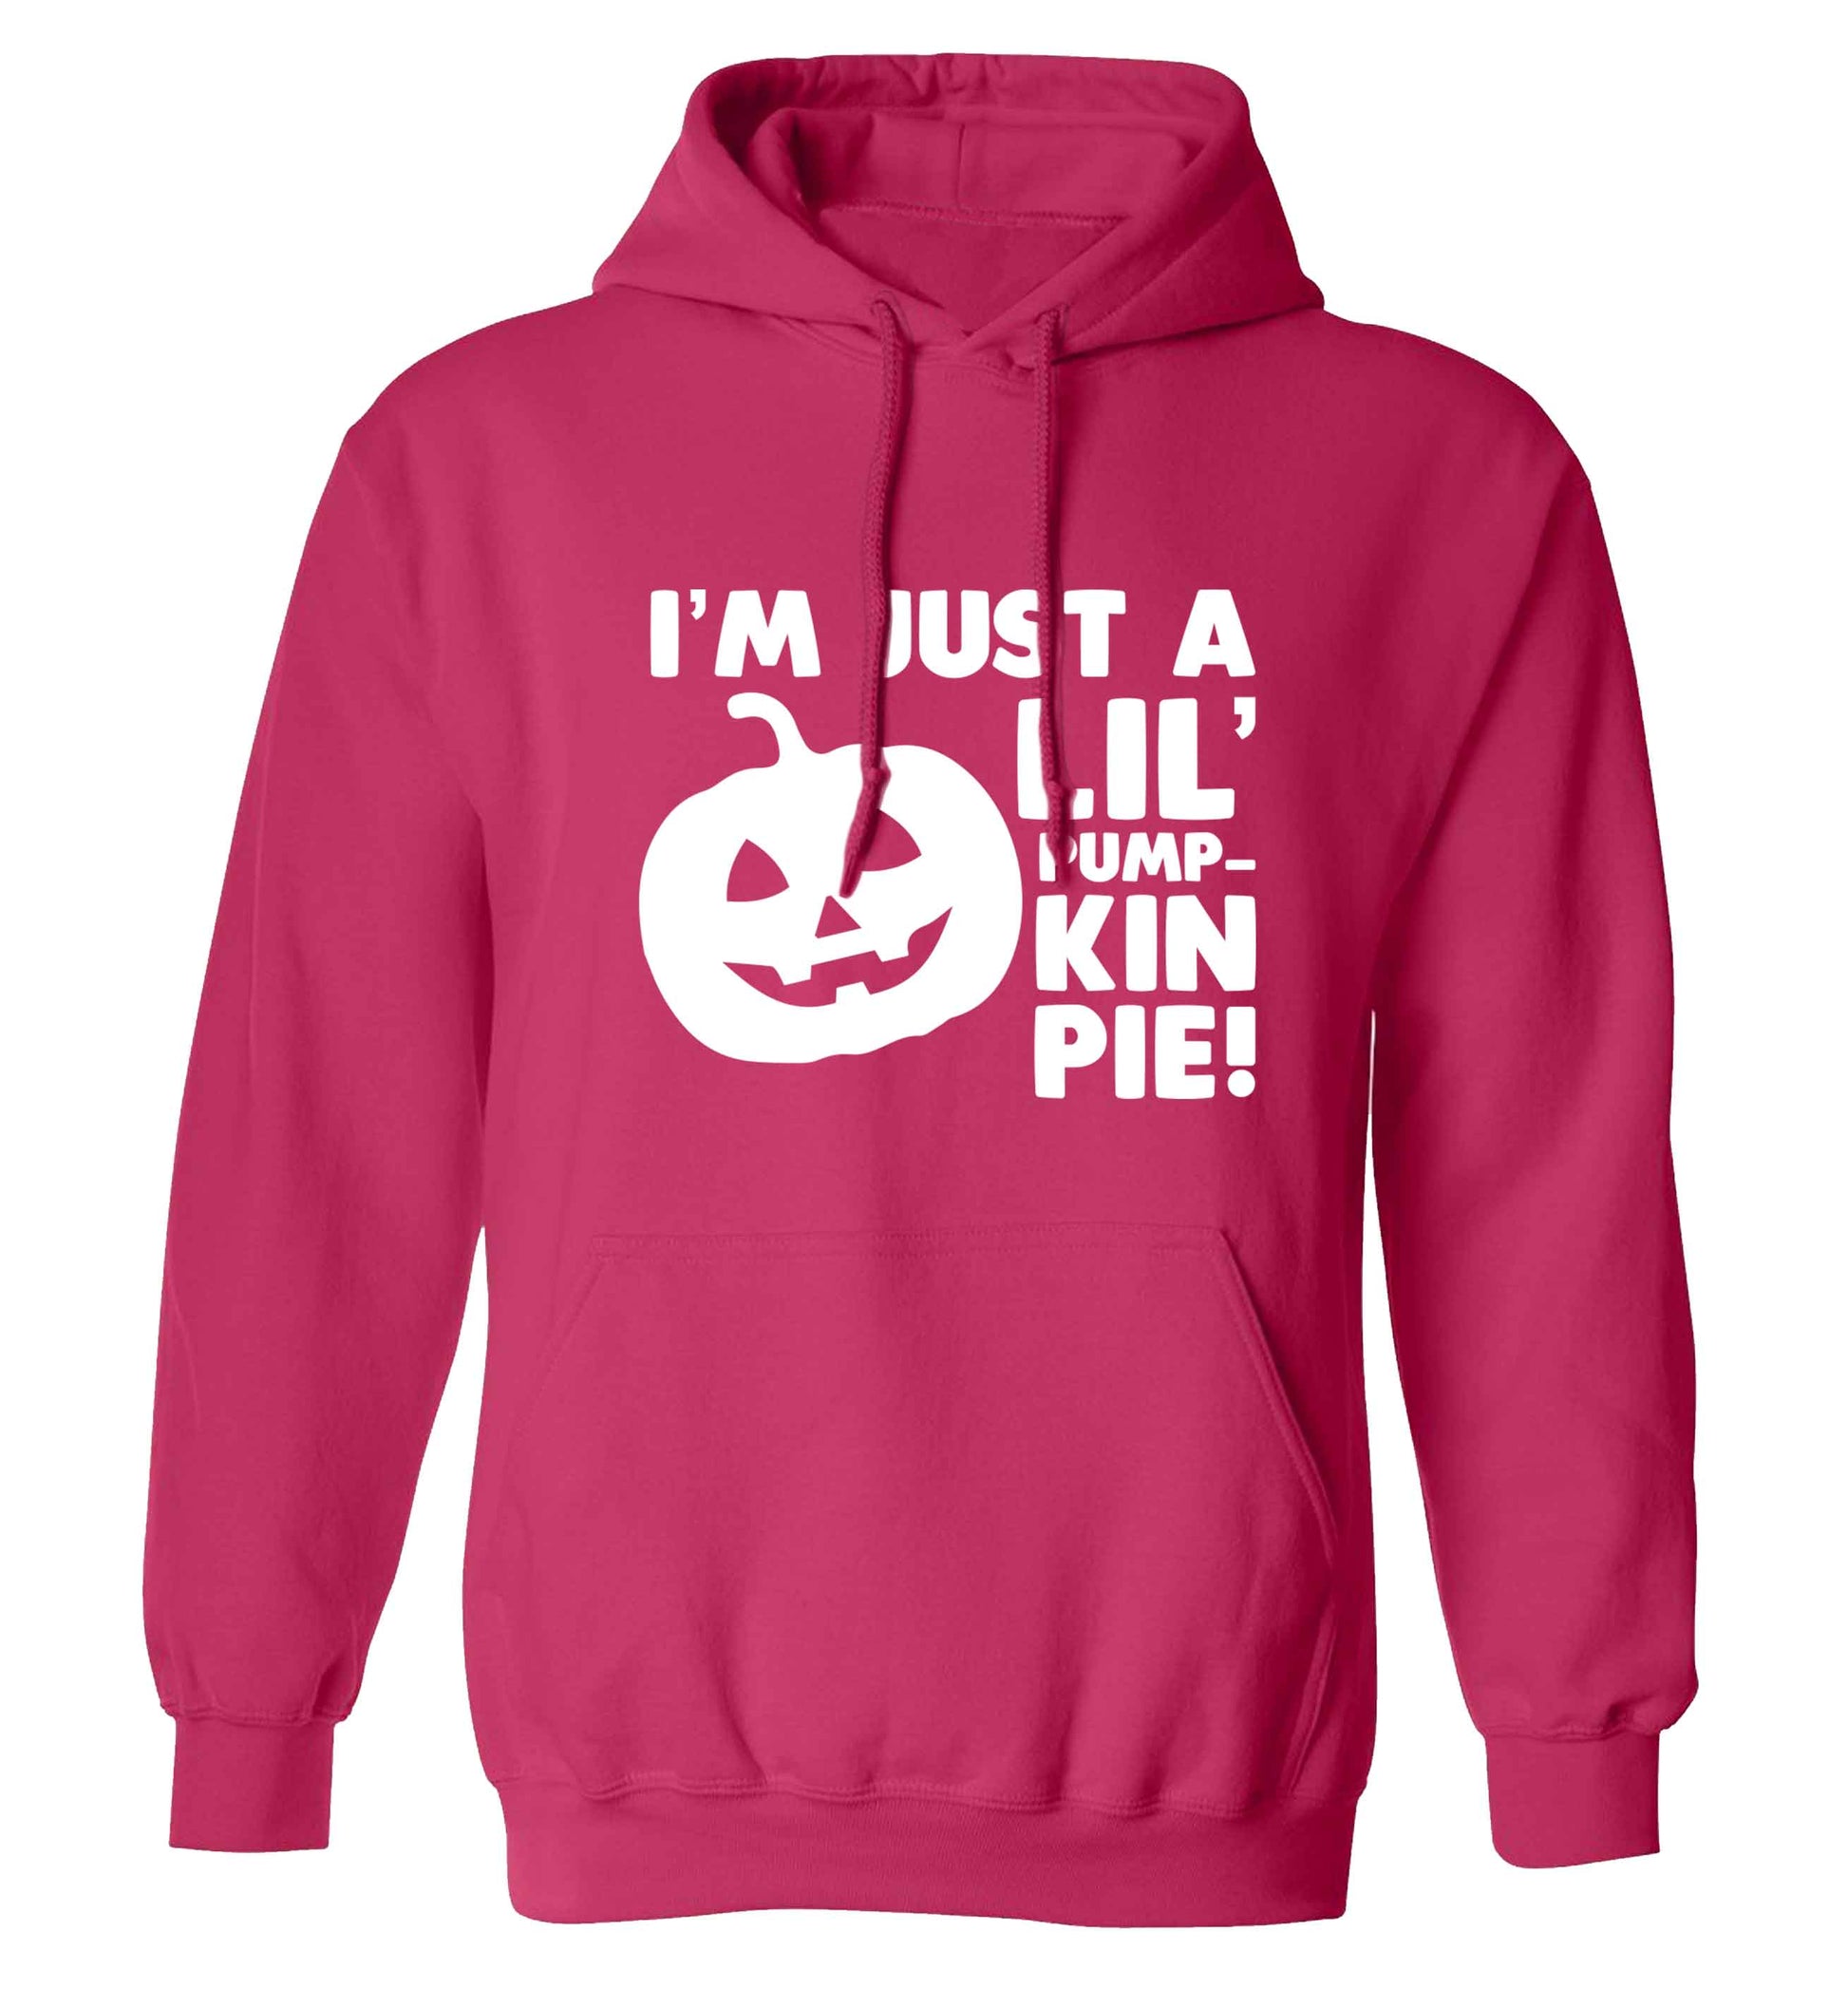 I'm just a lil' pumpkin pie adults unisex pink hoodie 2XL